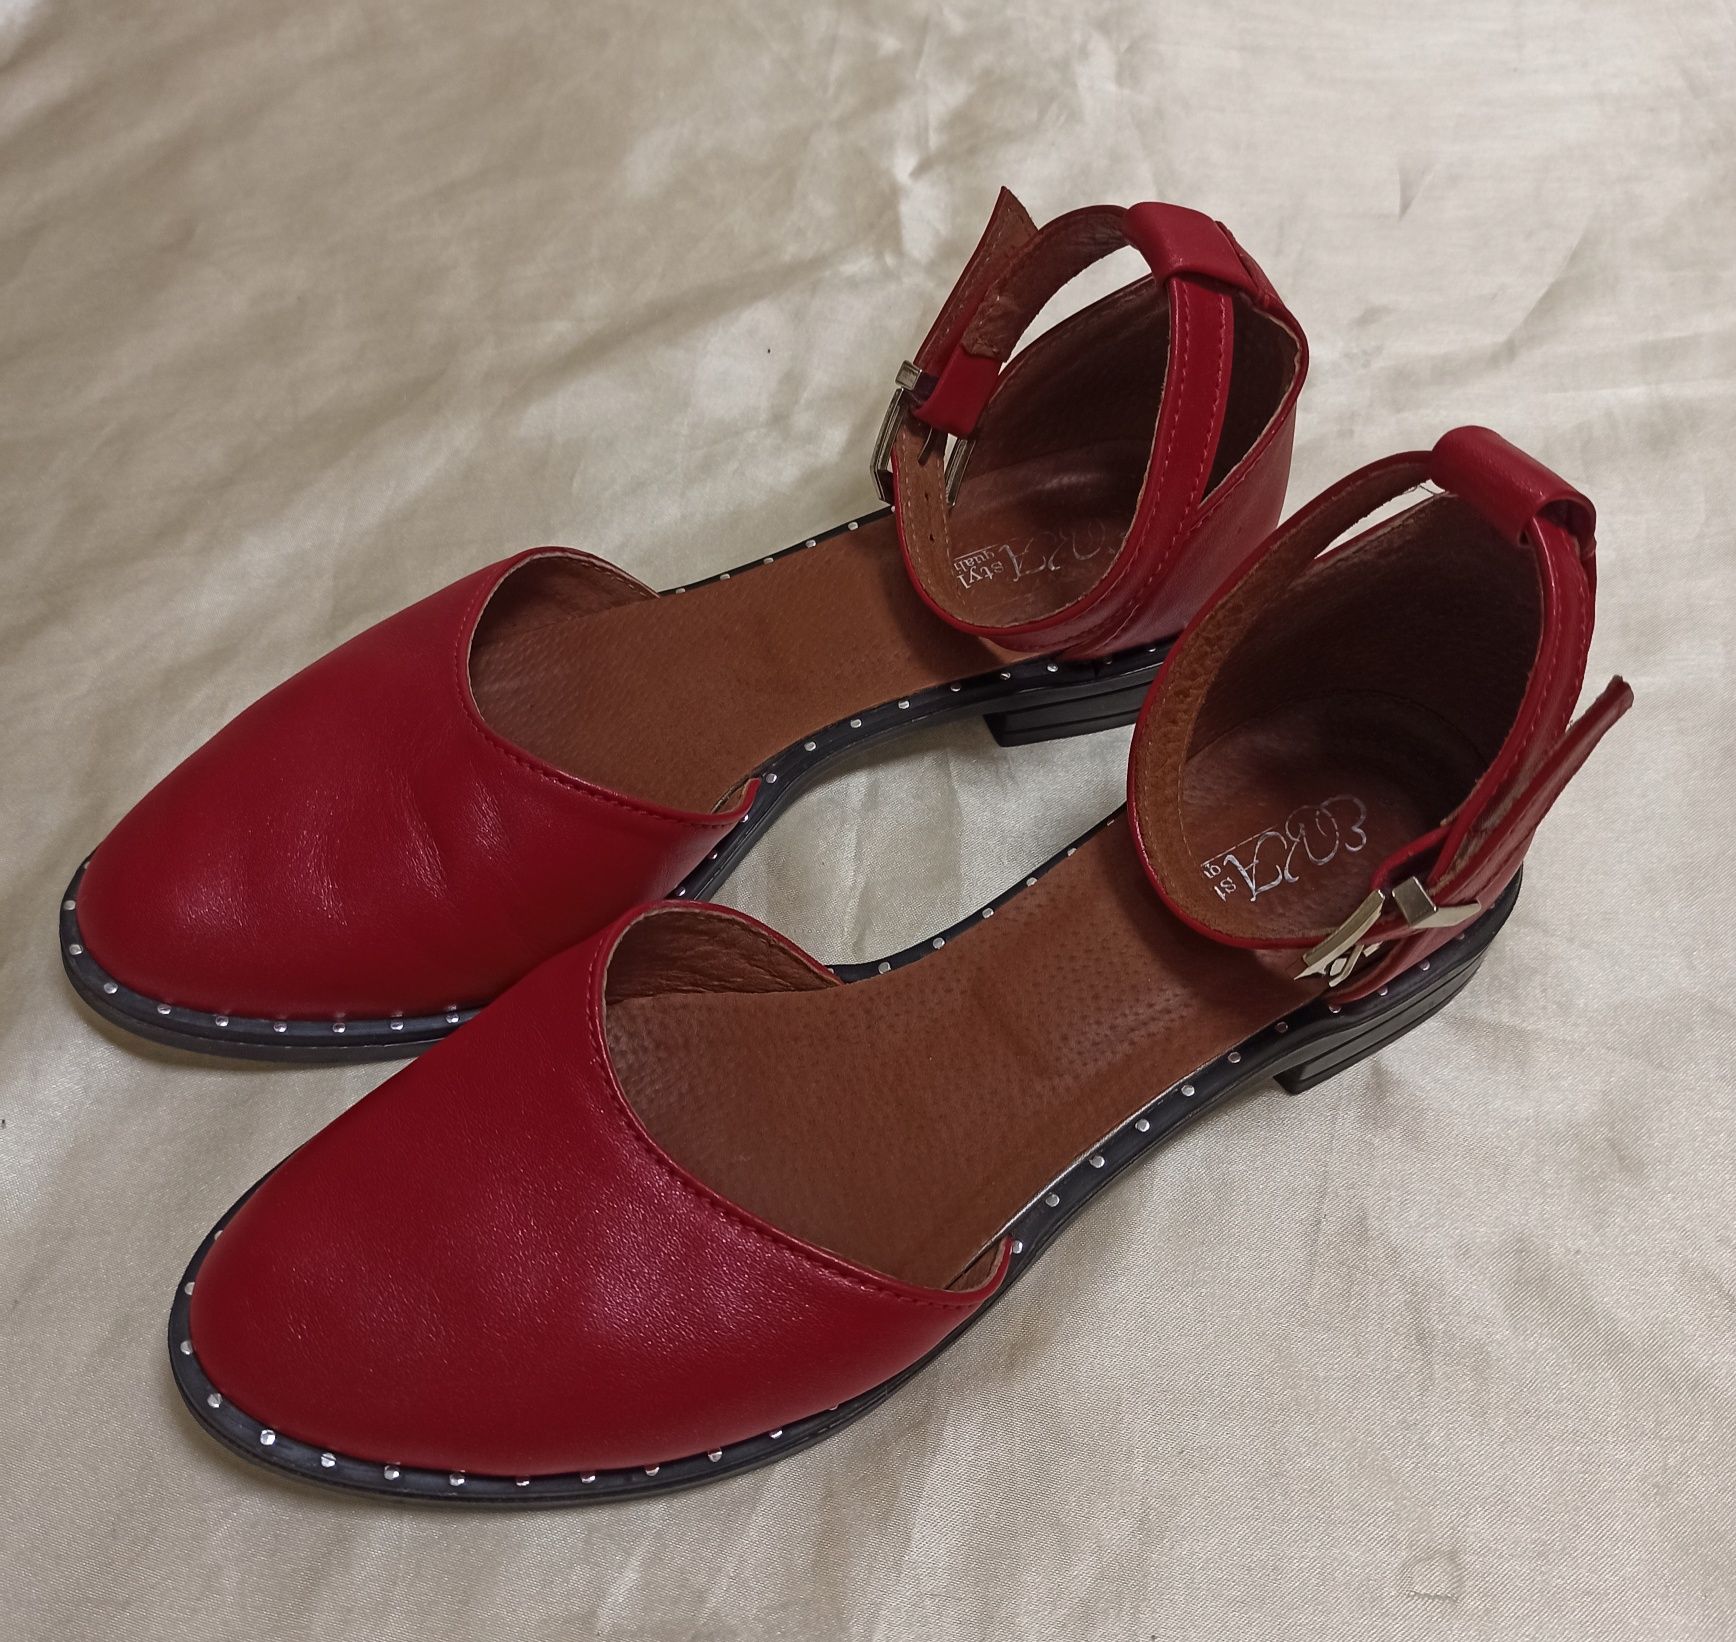 Красные босоножки Eva style туфли